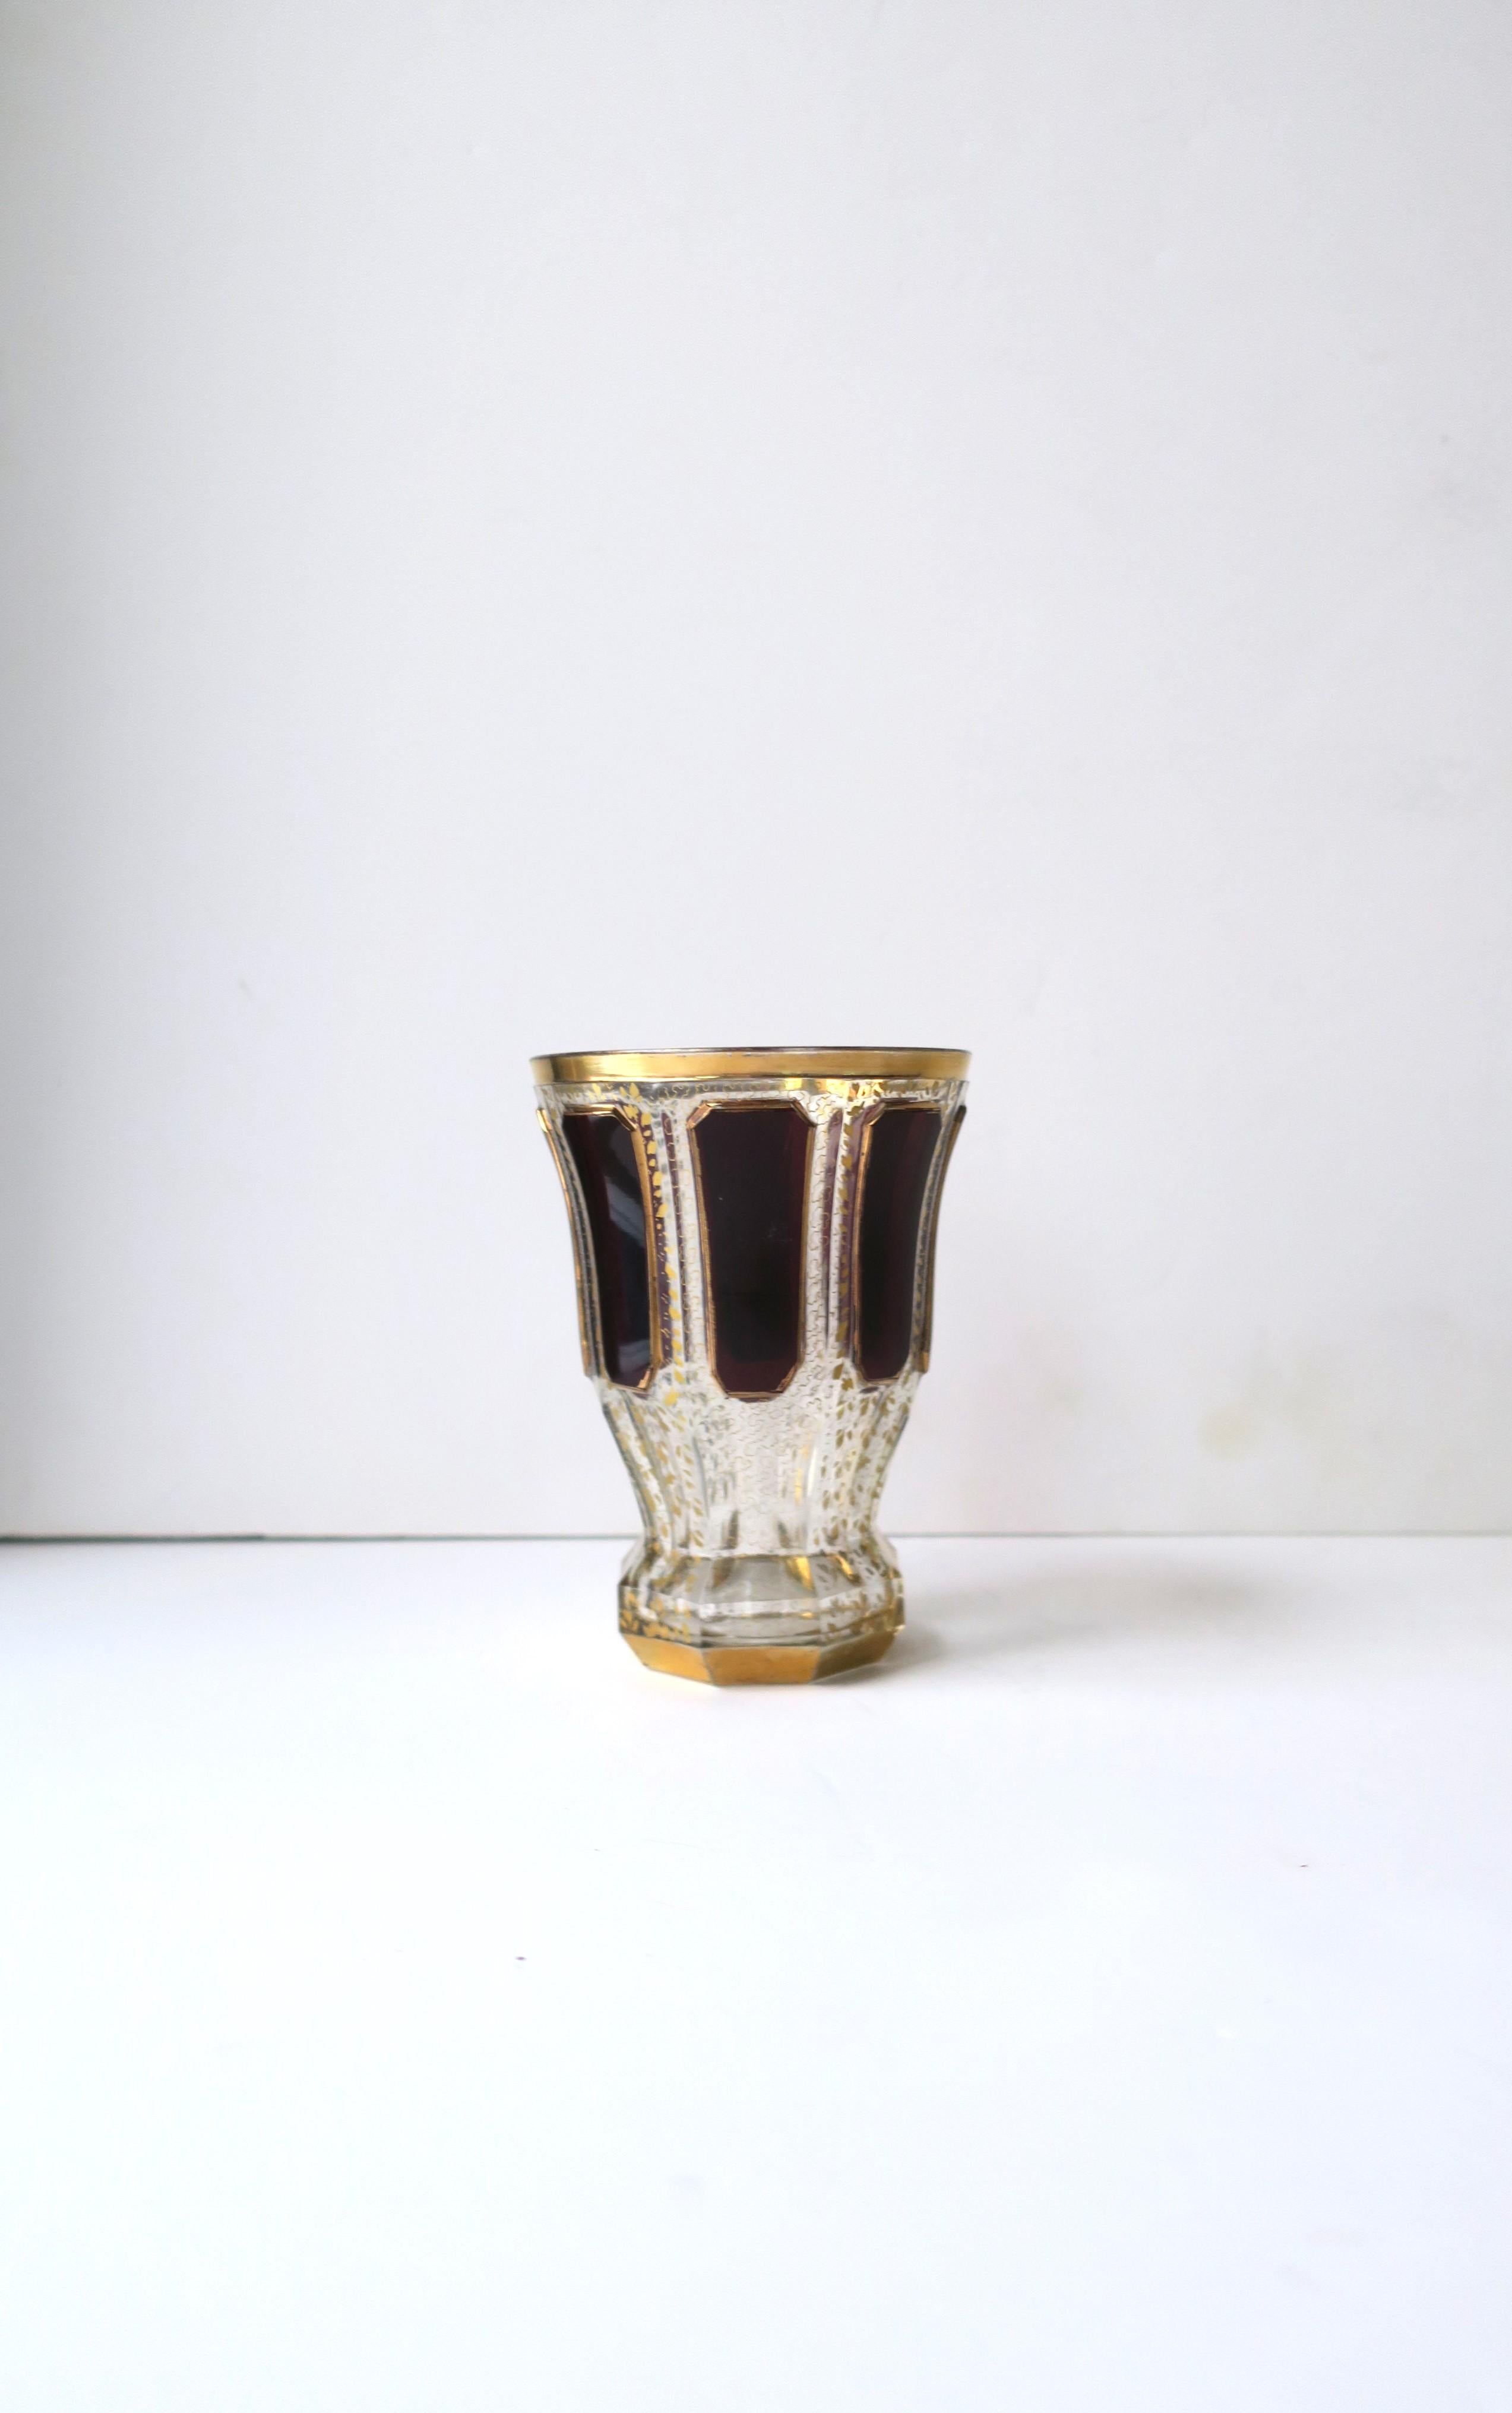 Magnifique vase ou récipient à bec en verre transparent/clair, rouge bordeaux et doré de Bohême, vers la fin du XIXe siècle, Tchécoslovaquie. Le vase est attribué au cristallier de luxe Moser. La pièce présente de magnifiques détails de haut en bas,